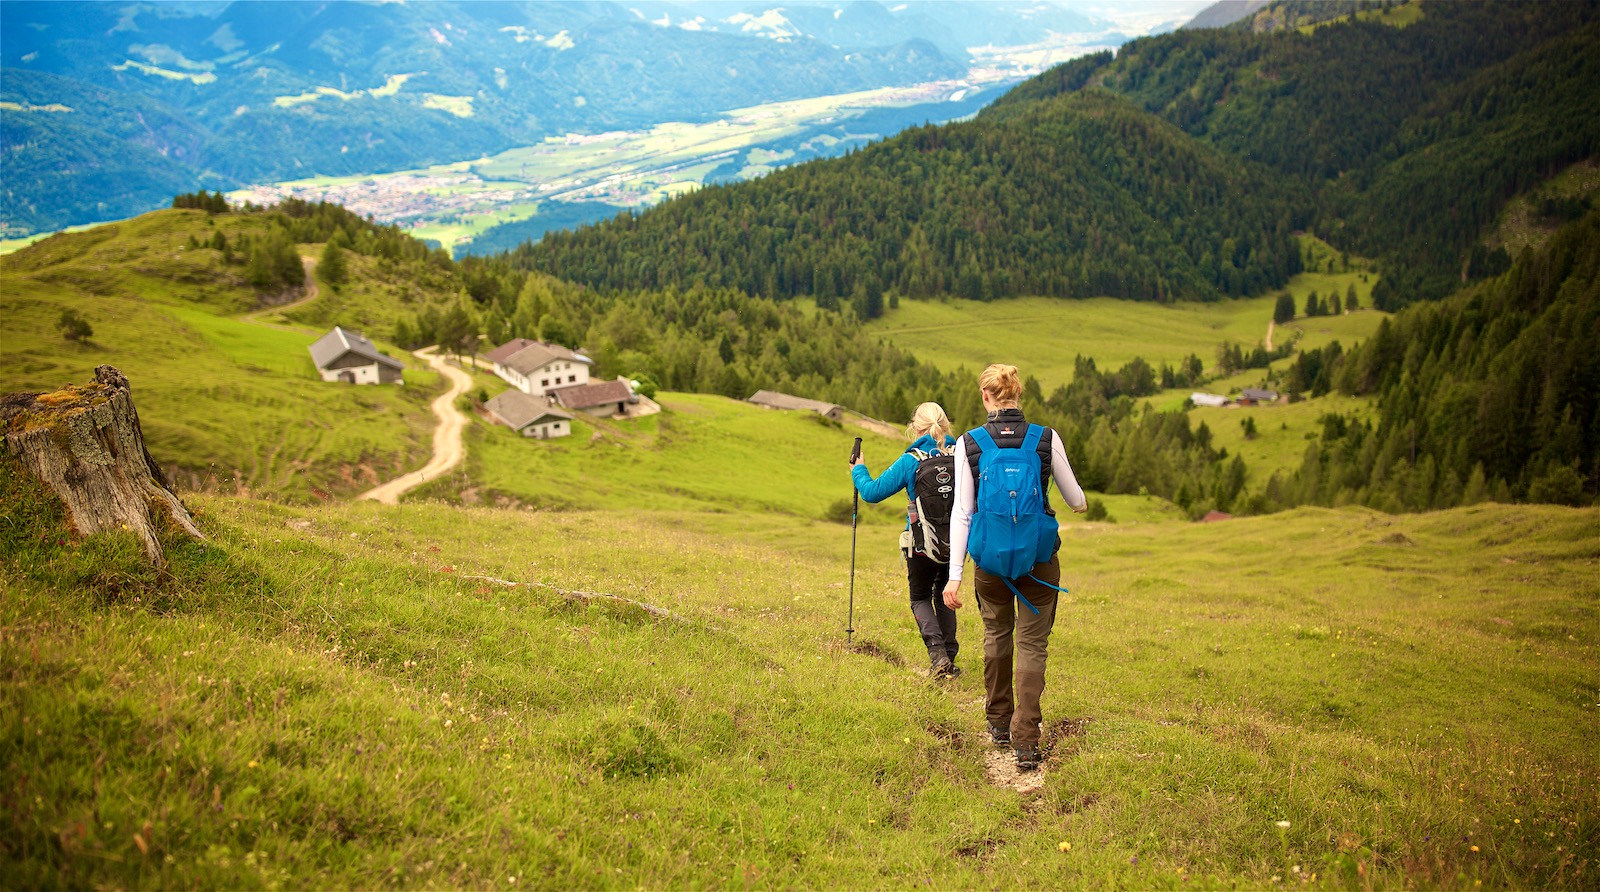 Rejseblog: Vandretur i Alperne fra bjergtop ned i isgrotte - Mette & Martin Rejser